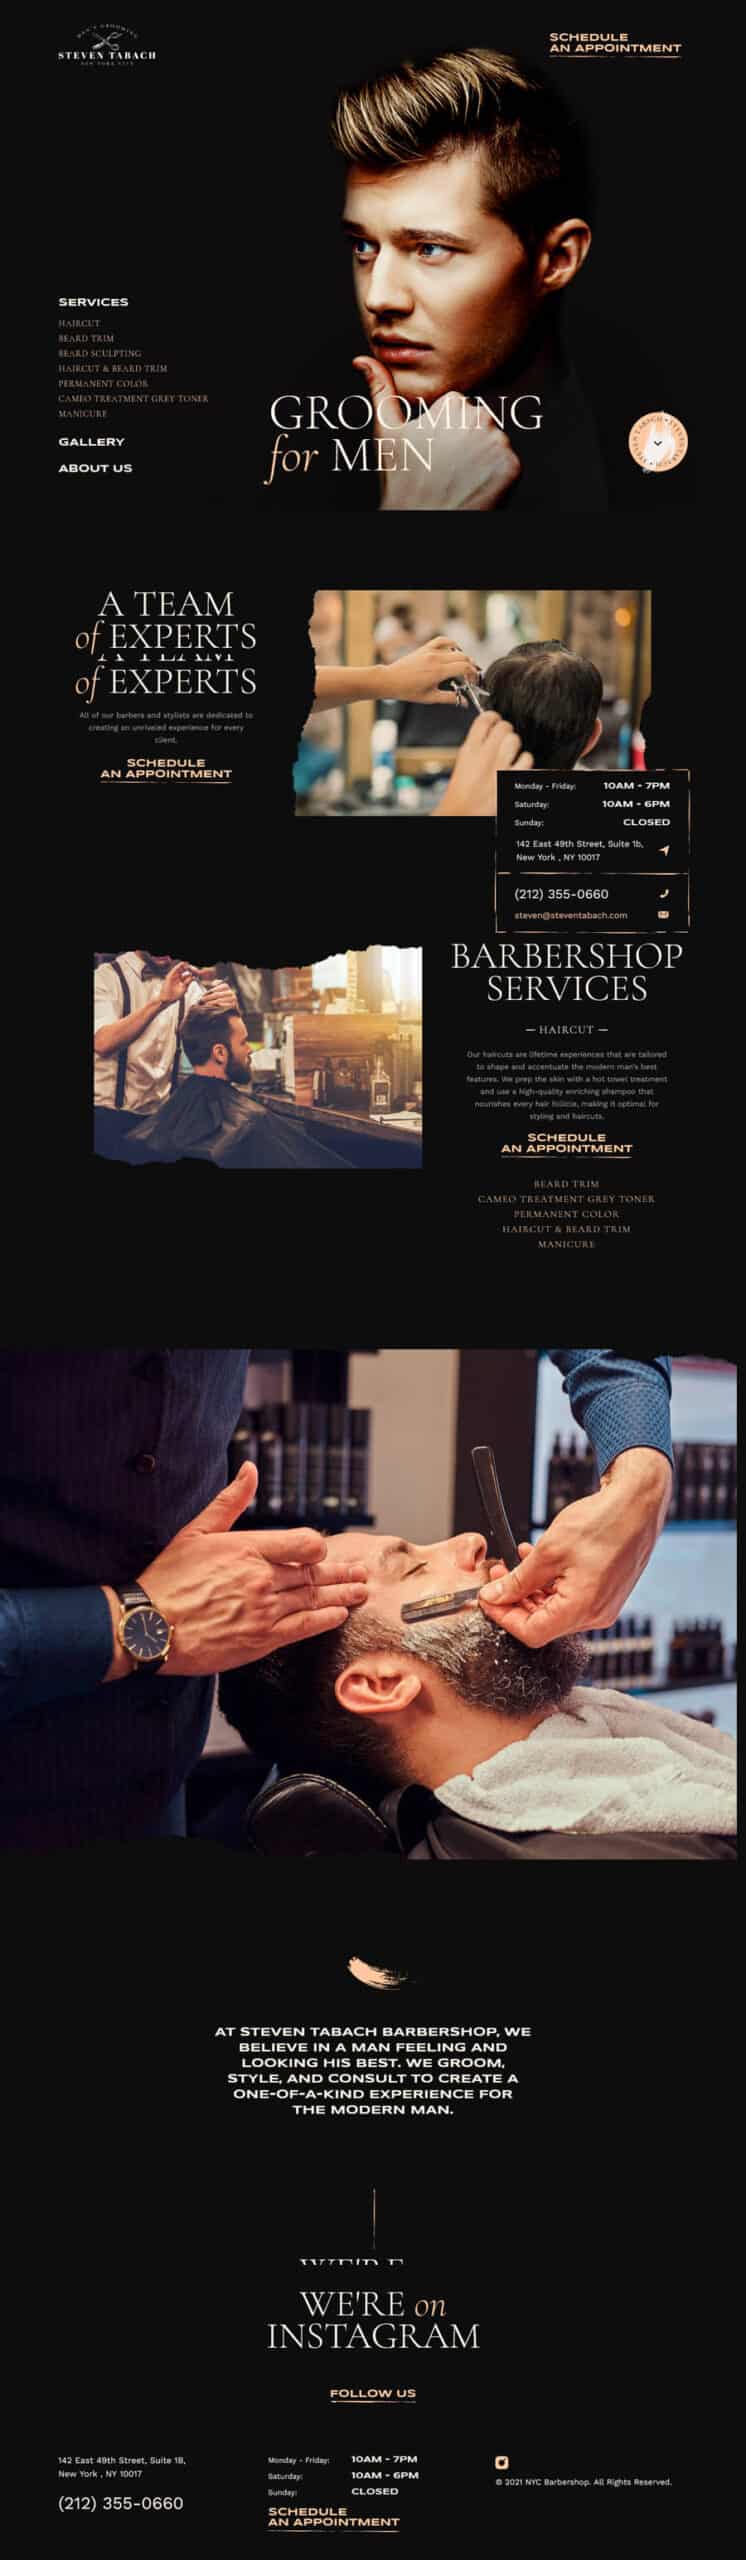 Barbershop Website Design: Abel's on Queen Barbershop